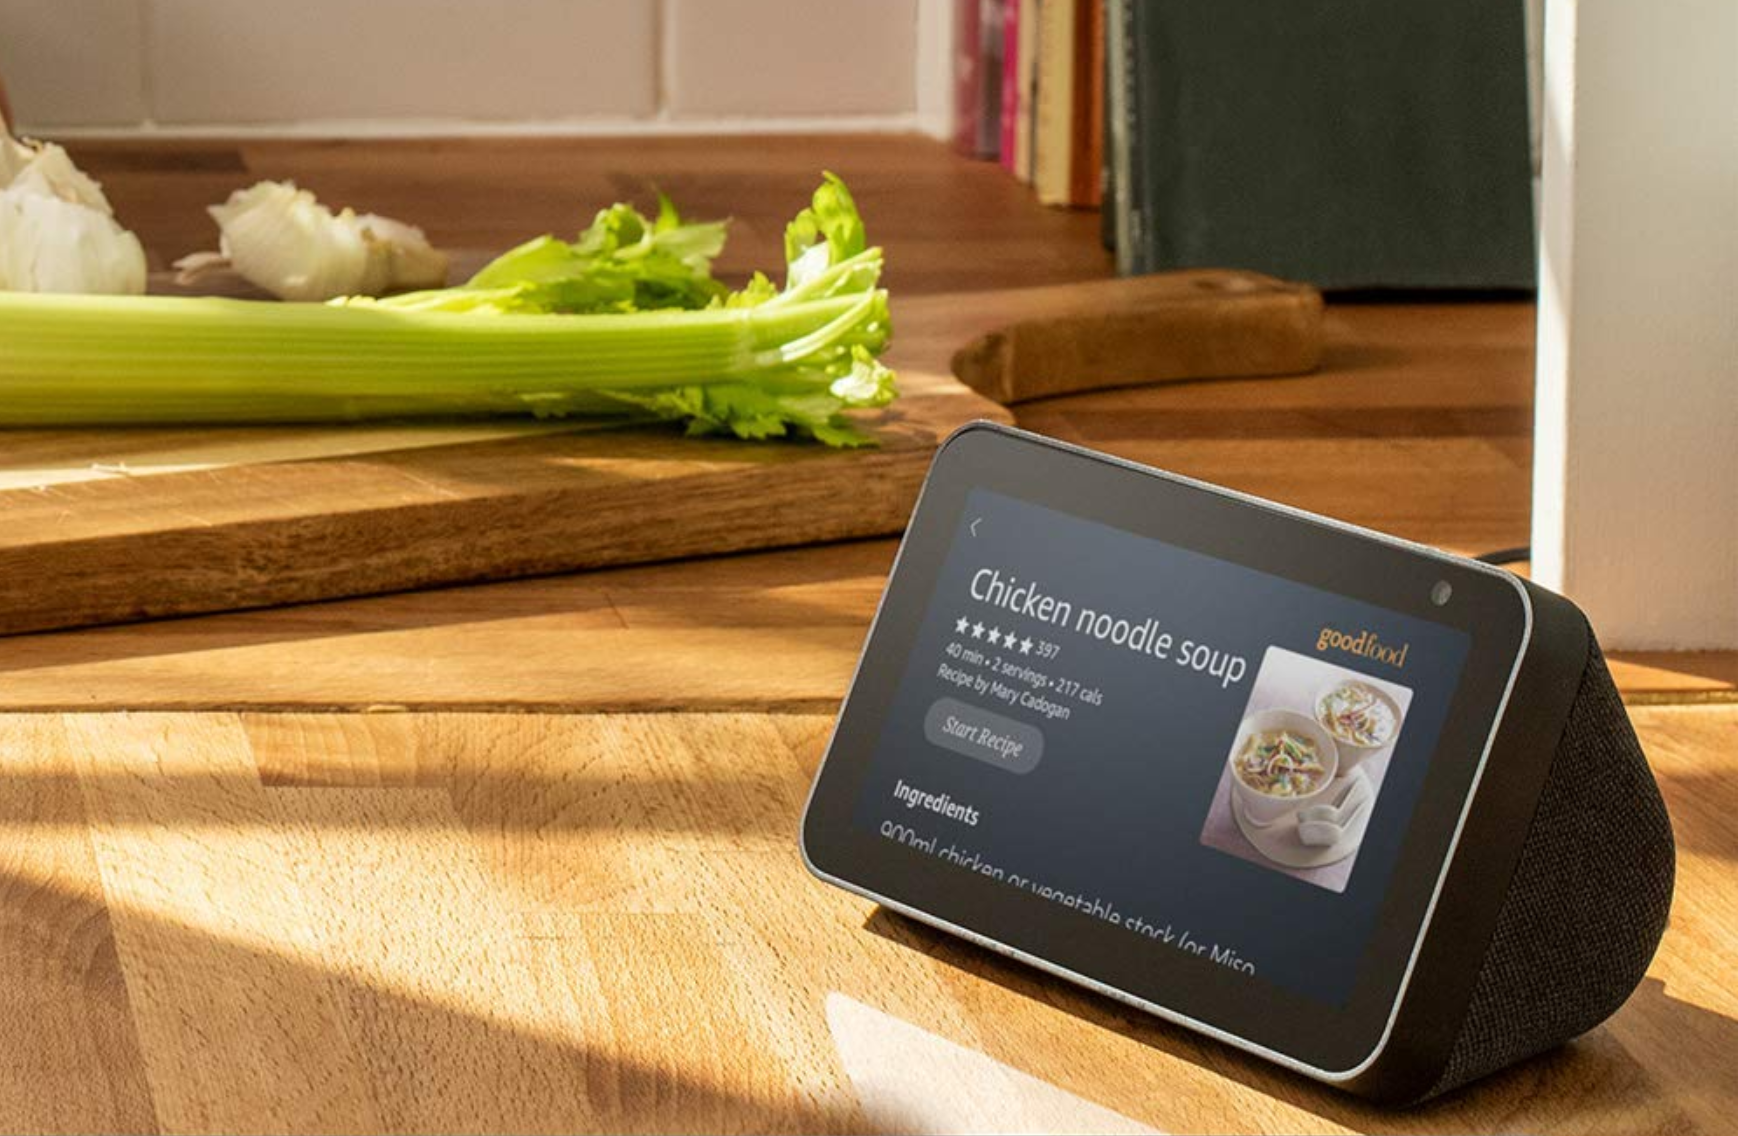 Amazon Echo Show 5 smart display